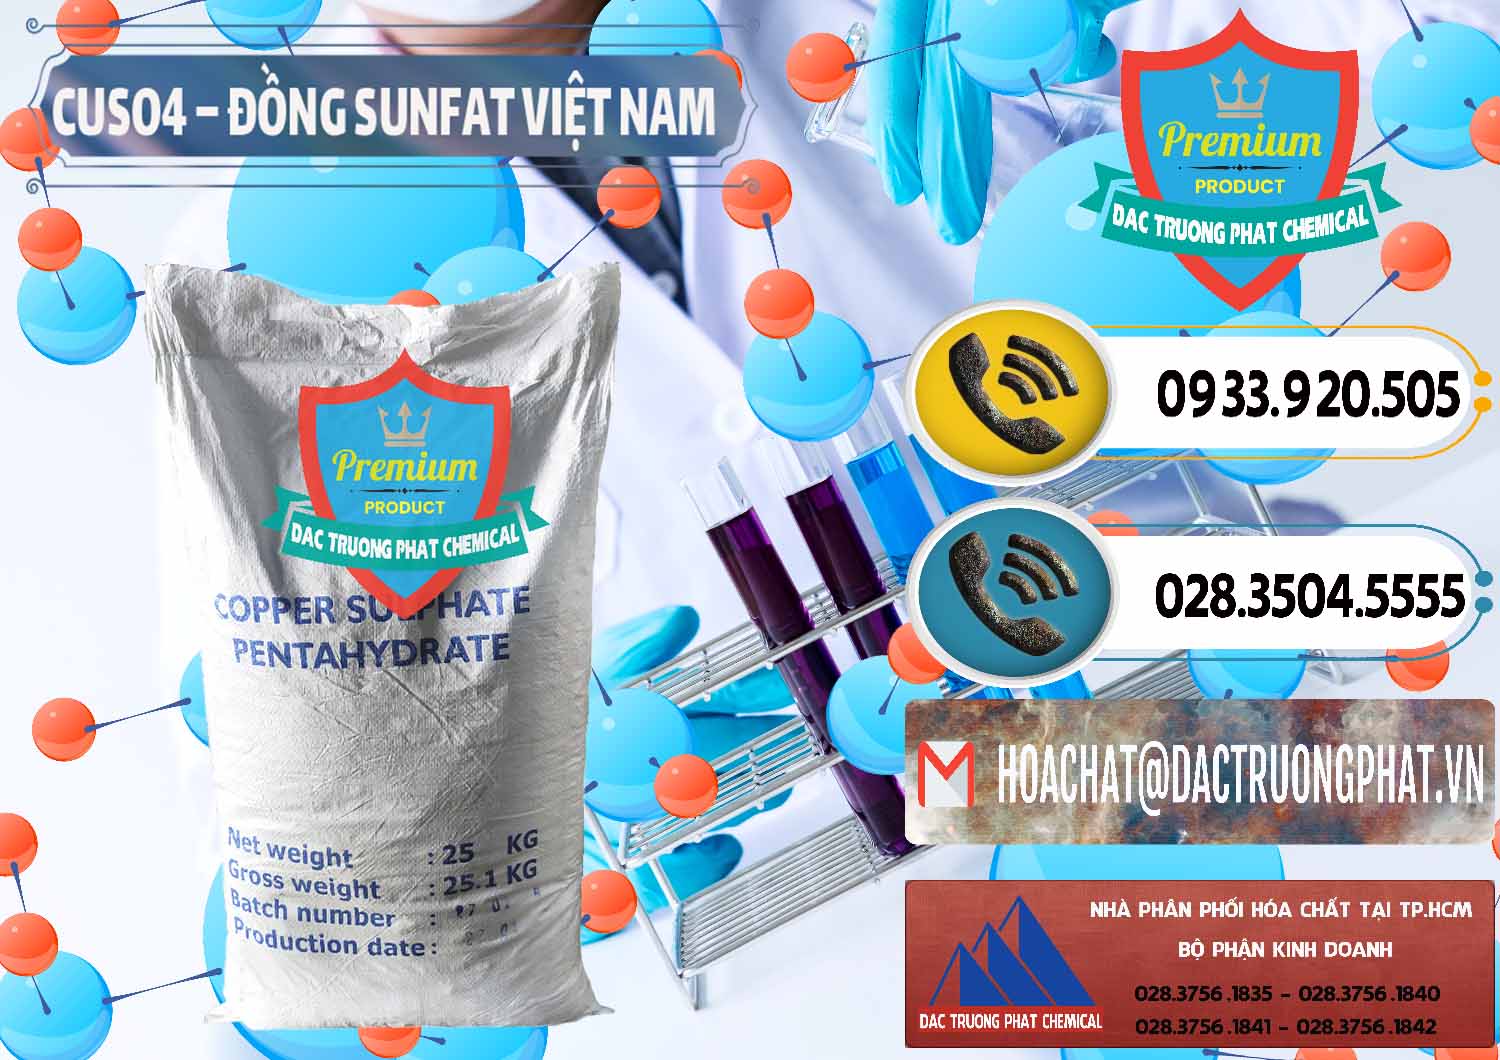 Cty kinh doanh và bán CuSO4 – Đồng Sunfat Dạng Bột Việt Nam - 0196 - Chuyên cung cấp & phân phối hóa chất tại TP.HCM - hoachatdetnhuom.vn